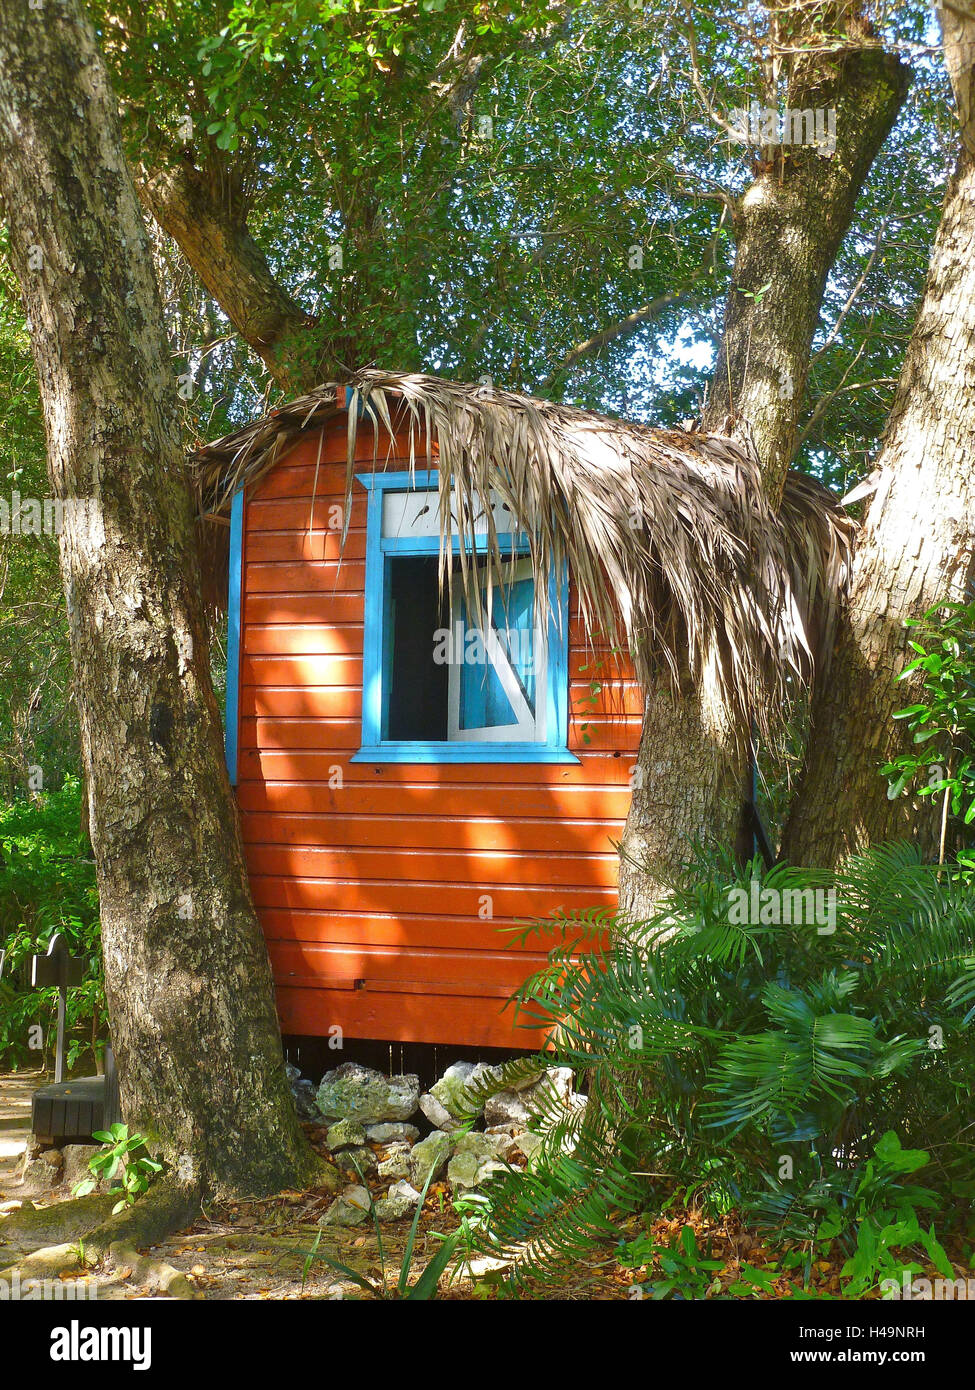 La República Dominicana, Punta Cana, cabaña de madera de color en el parque del hotel Bavaro Princess, construido entre los árboles, Foto de stock